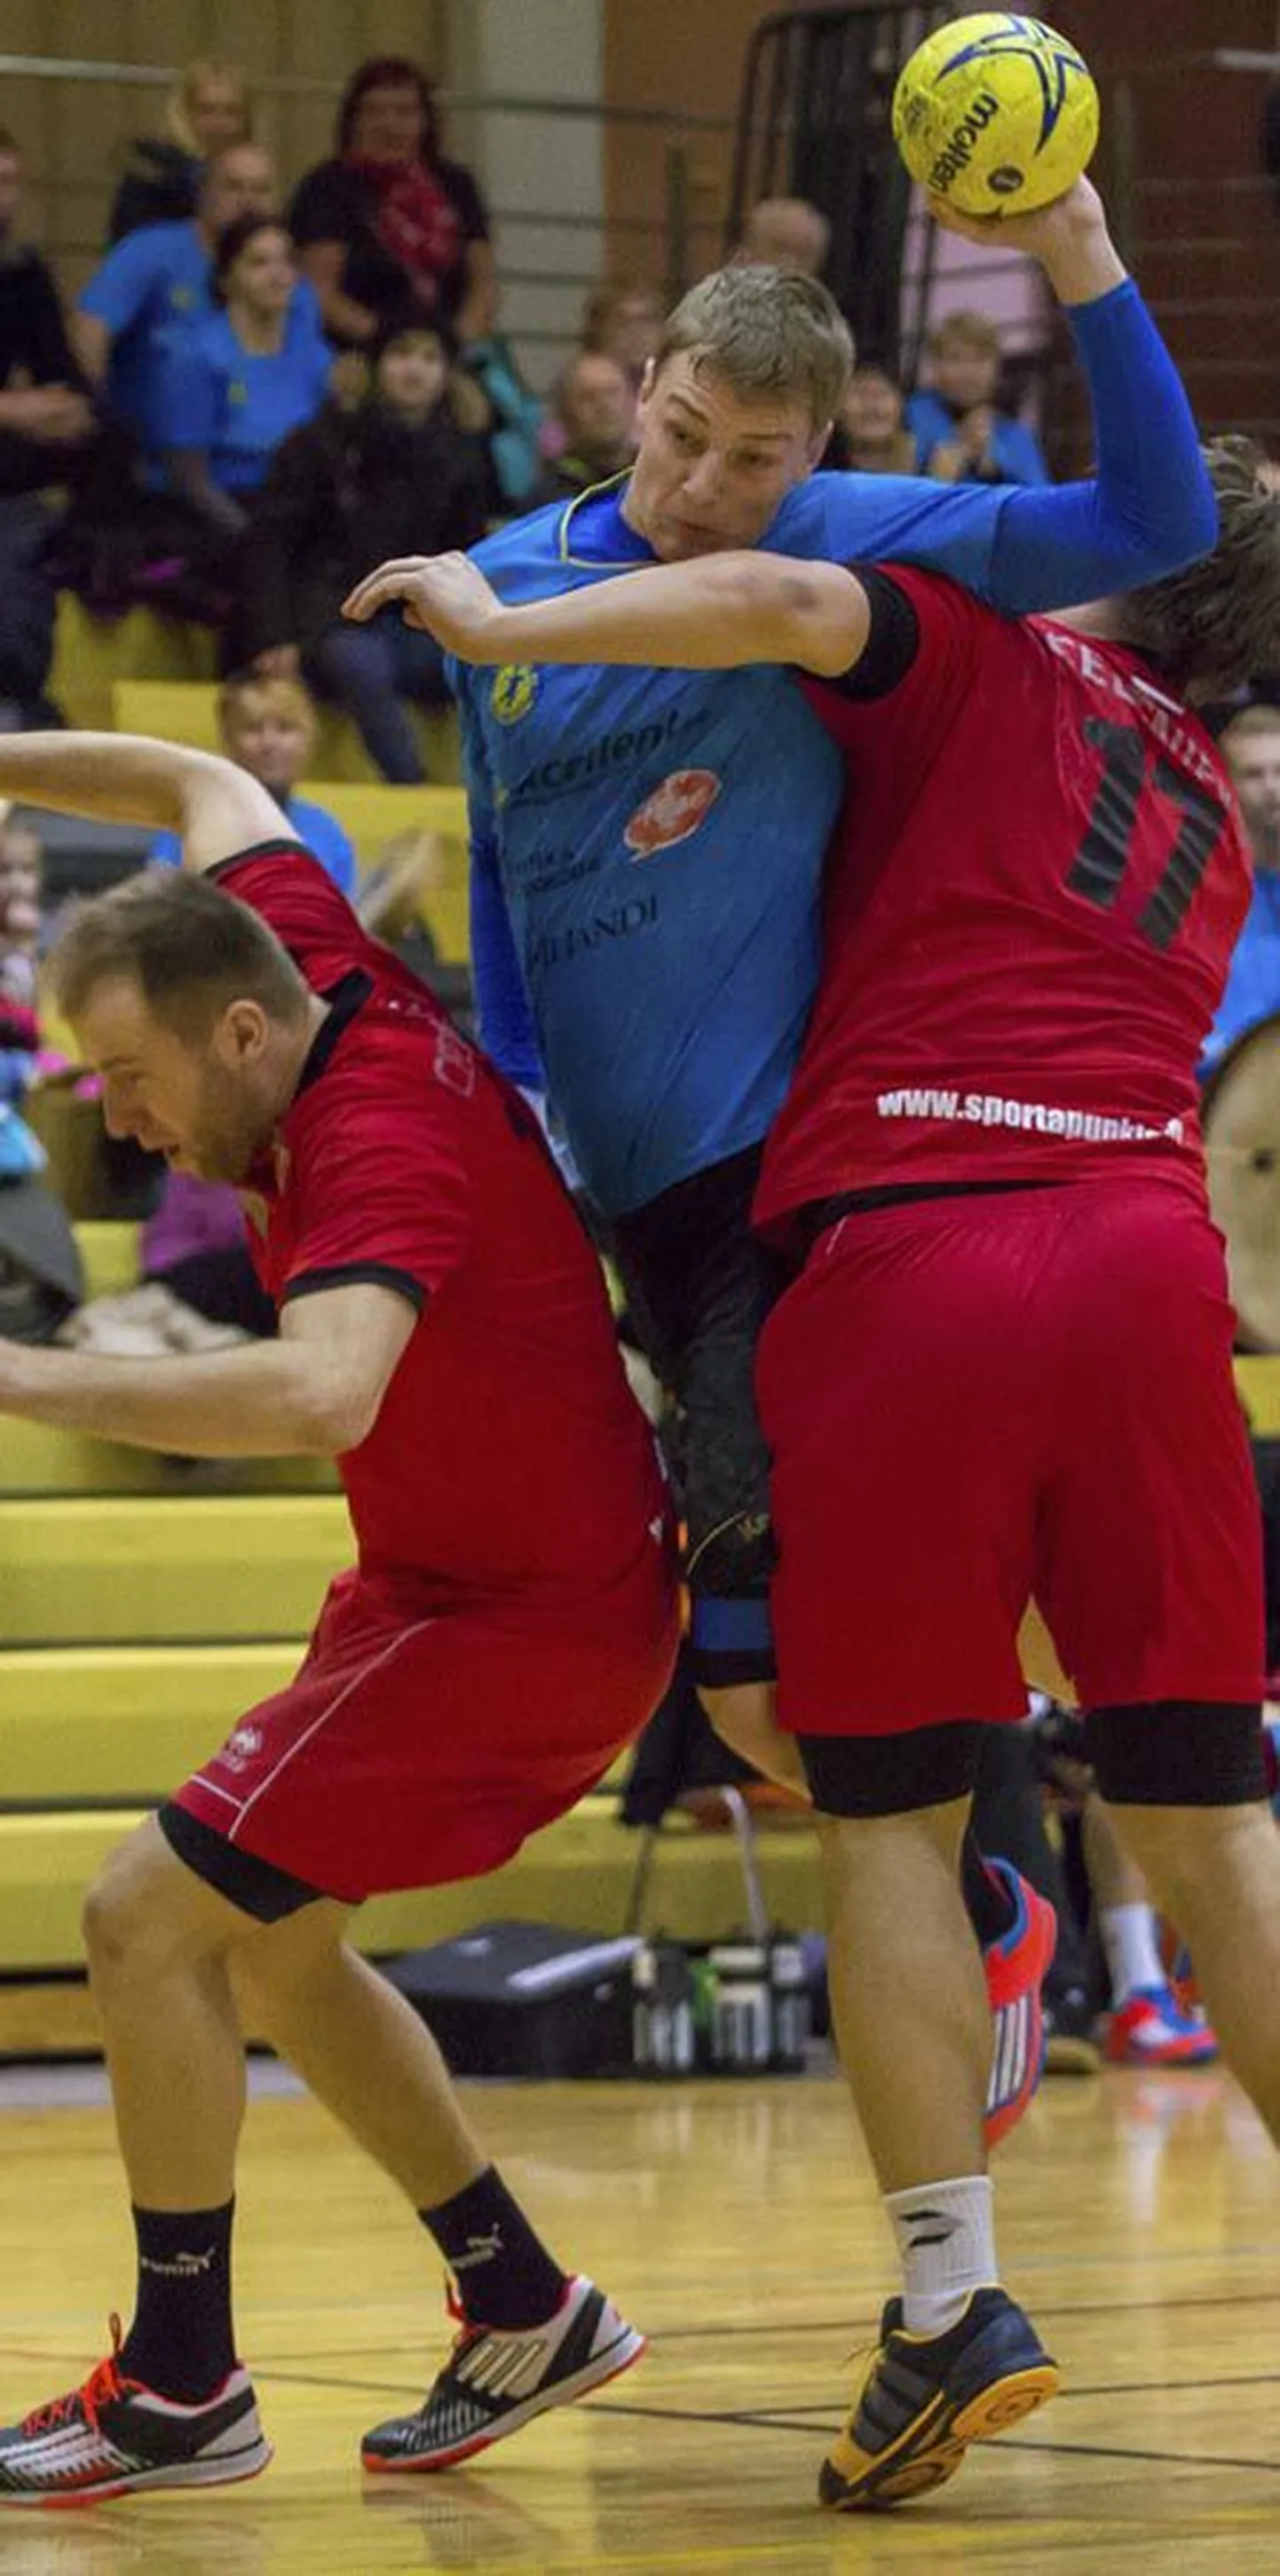 Viljandi käsipalliklubi teenis nädalavahetusel Balti liigas kaks võitu ning tagas endale koha nelja tugevama turniiril. Pildil on pärast vigastusest tingitud neljanädalast pausi ründamas mängujuht Karl Roosna.